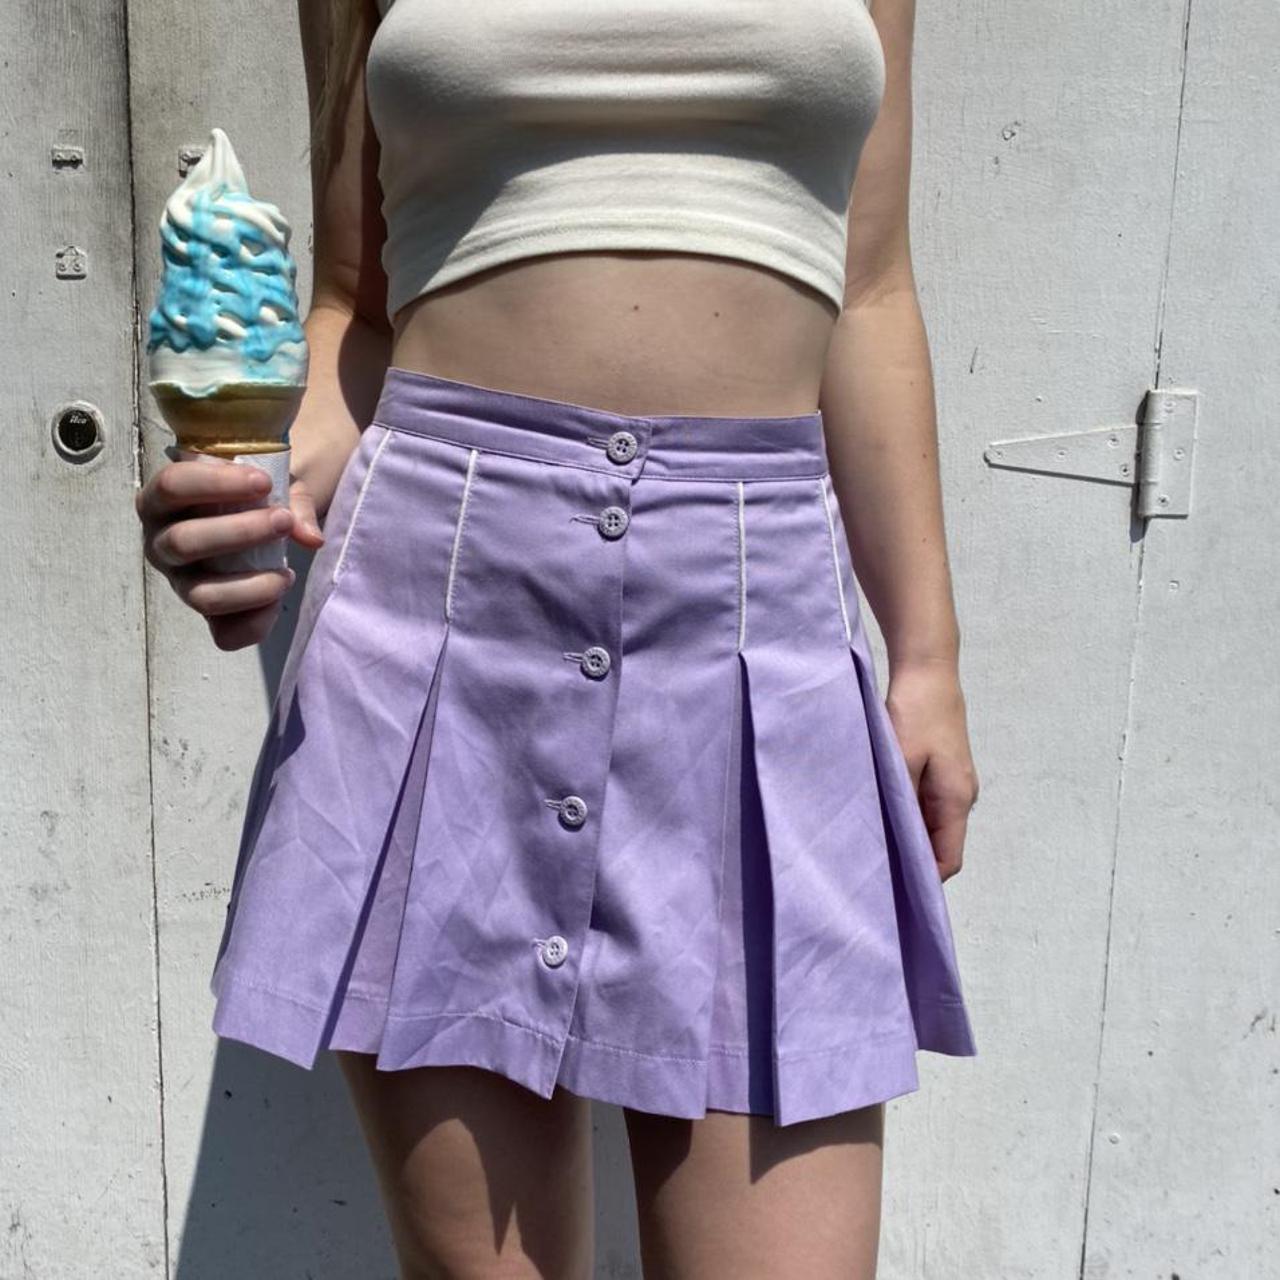 Ellesse Women's White and Purple Skirt | Depop